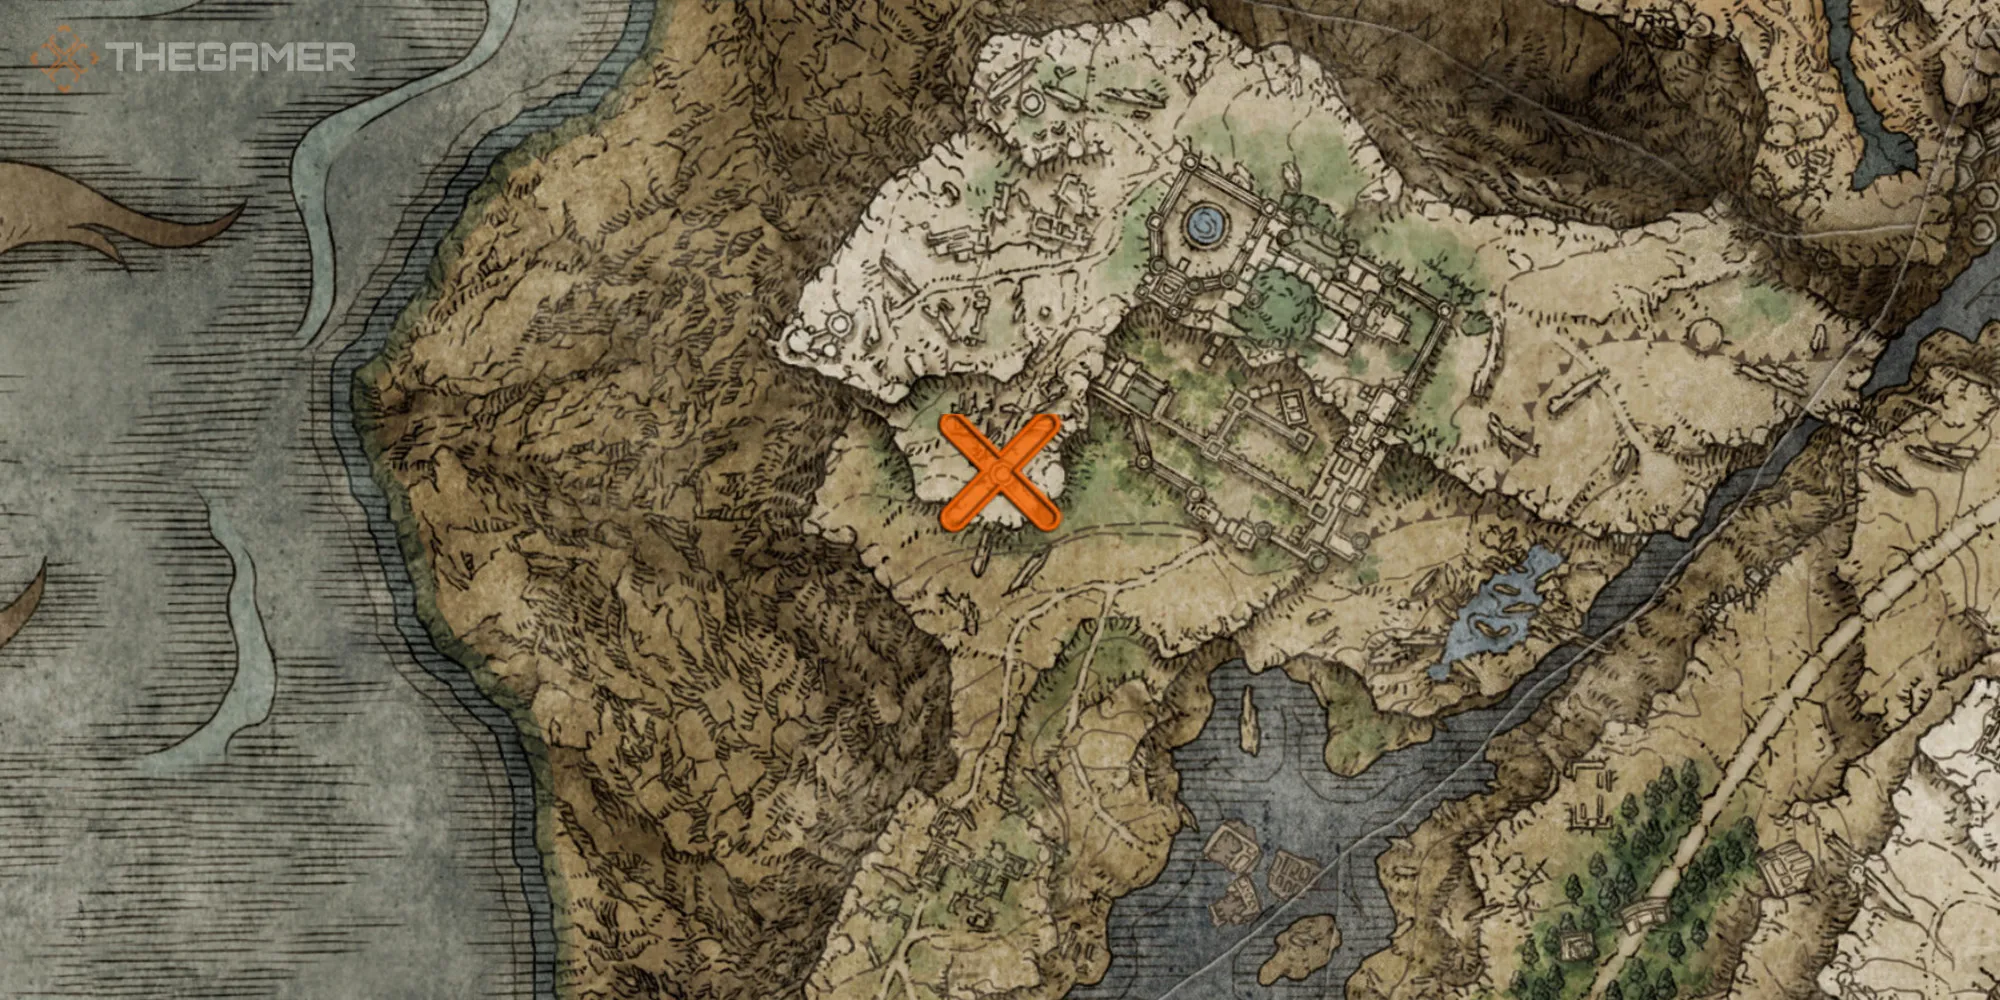 在《埃尔登环》中显示利尔尼亚中导师塞卢维斯位置的地图